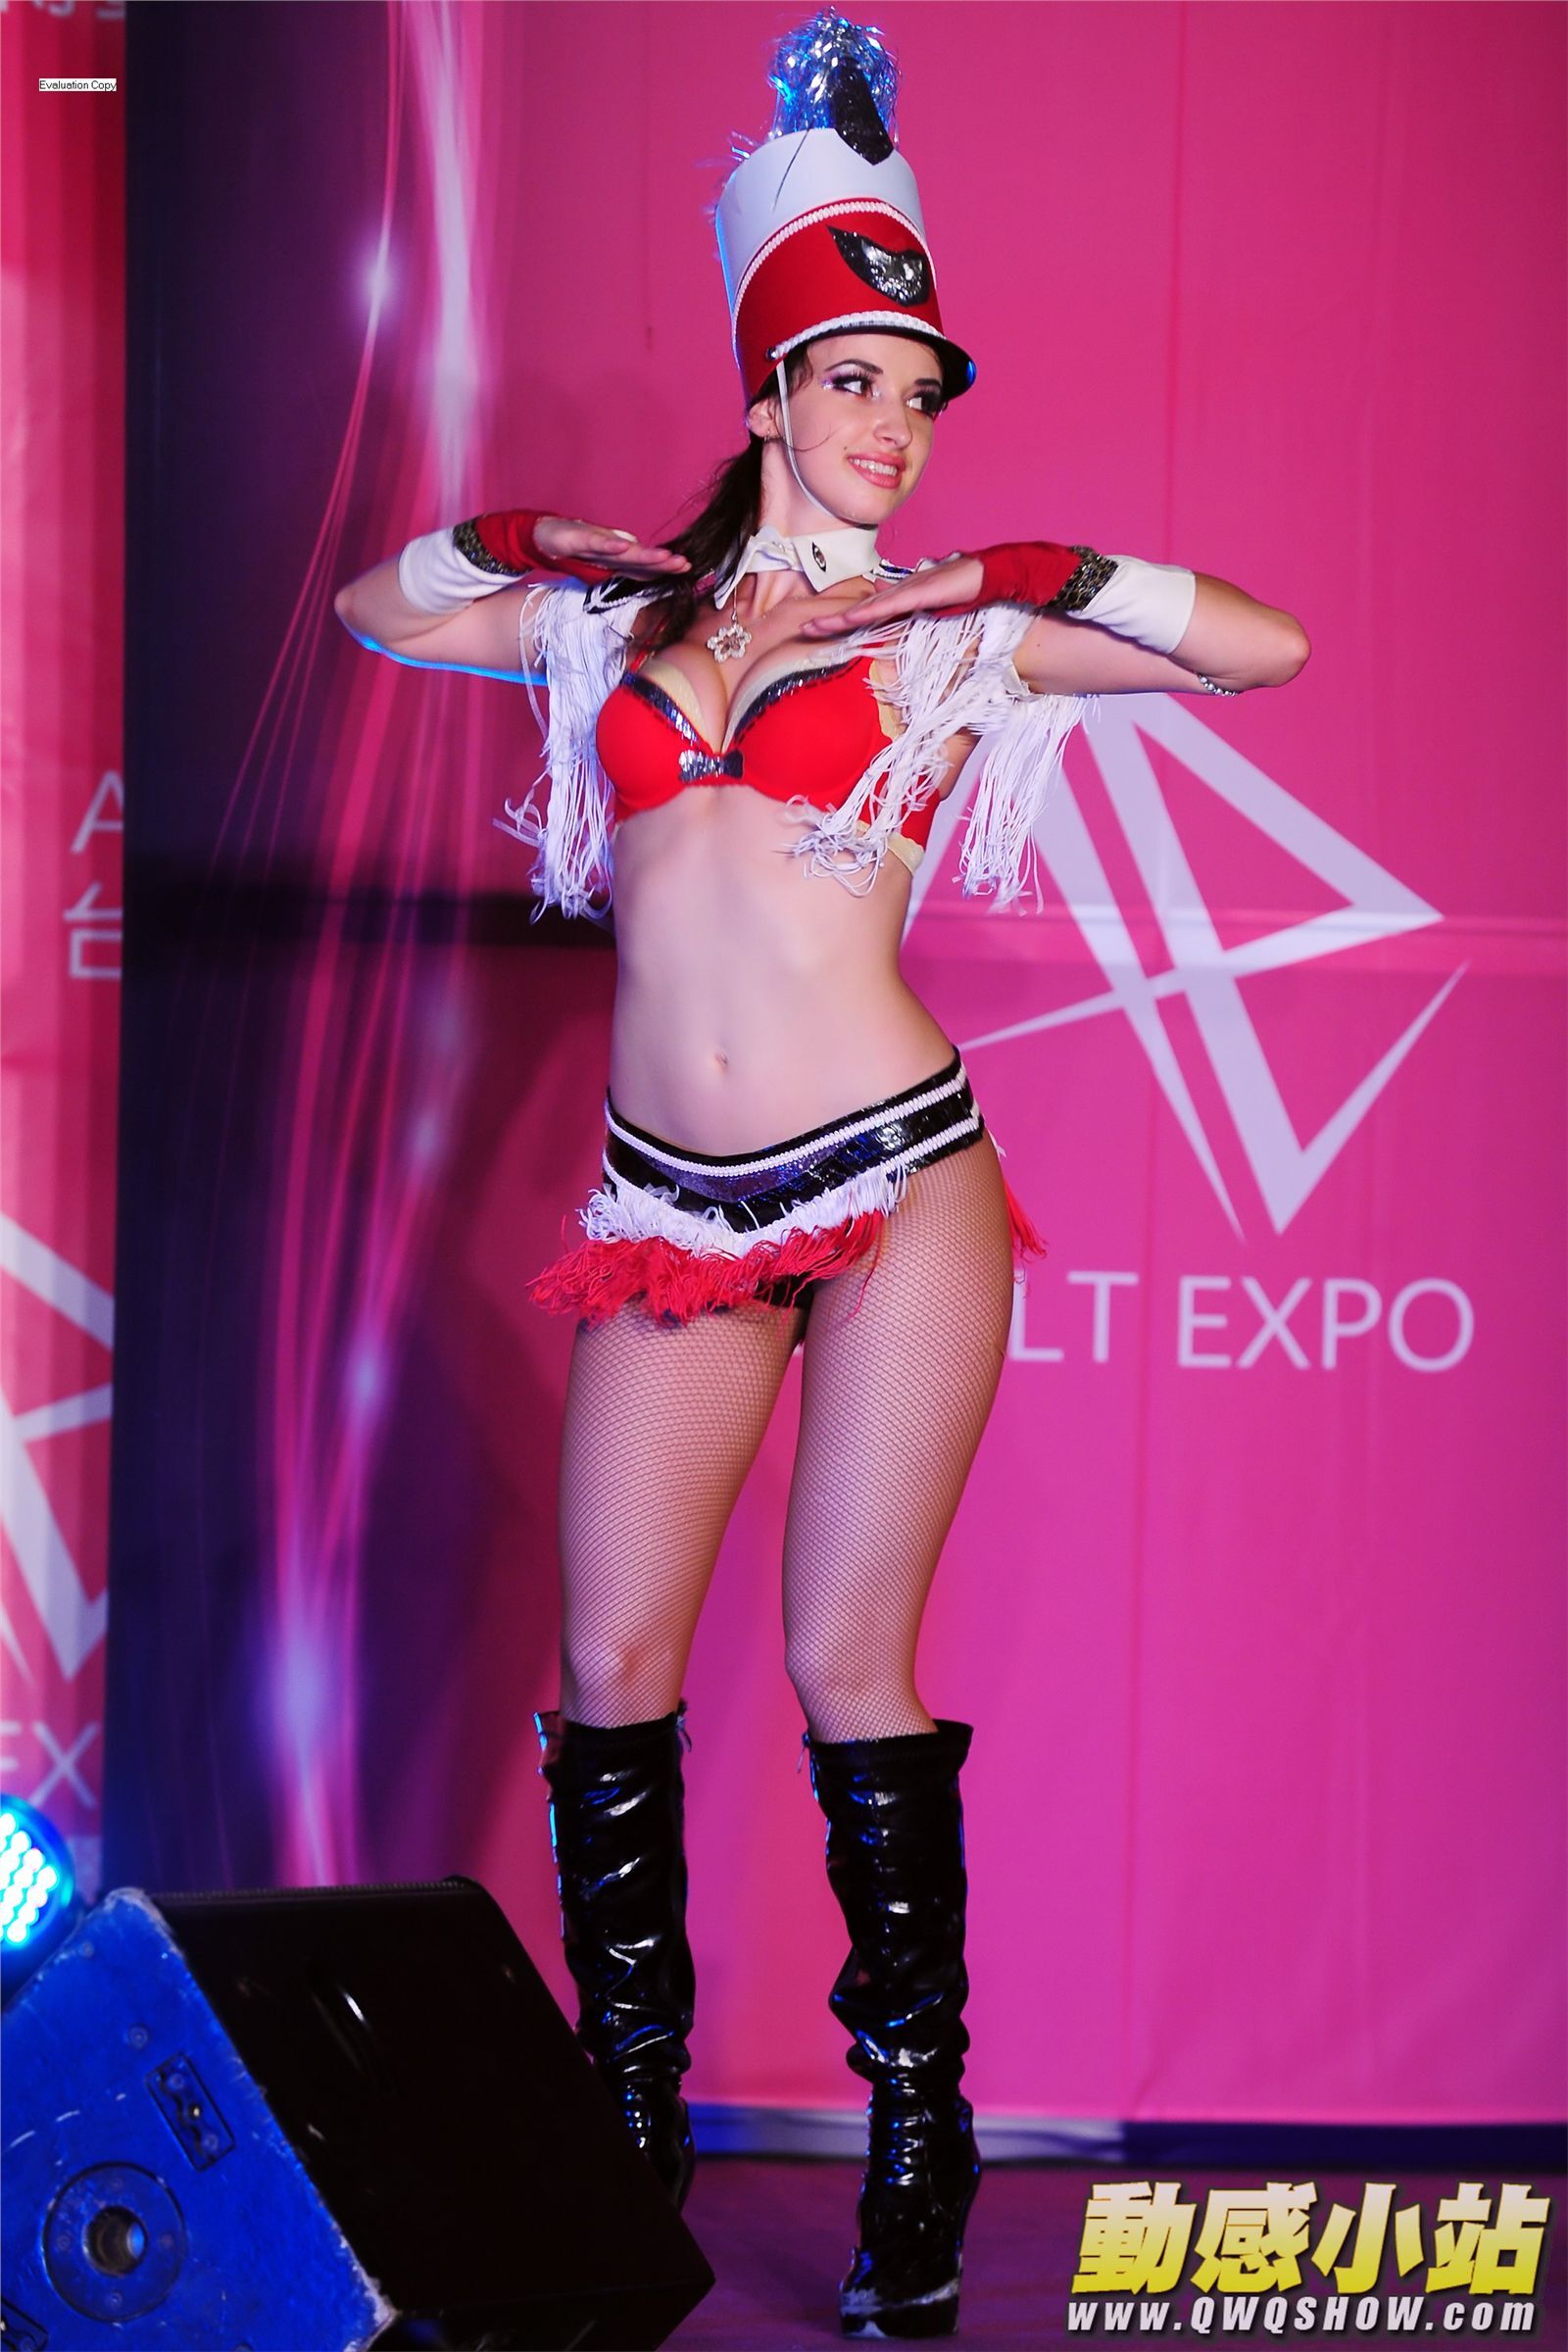 2012台灣成人博覽會外國舞者性感皮鞭秀 時尚舞蹈秀